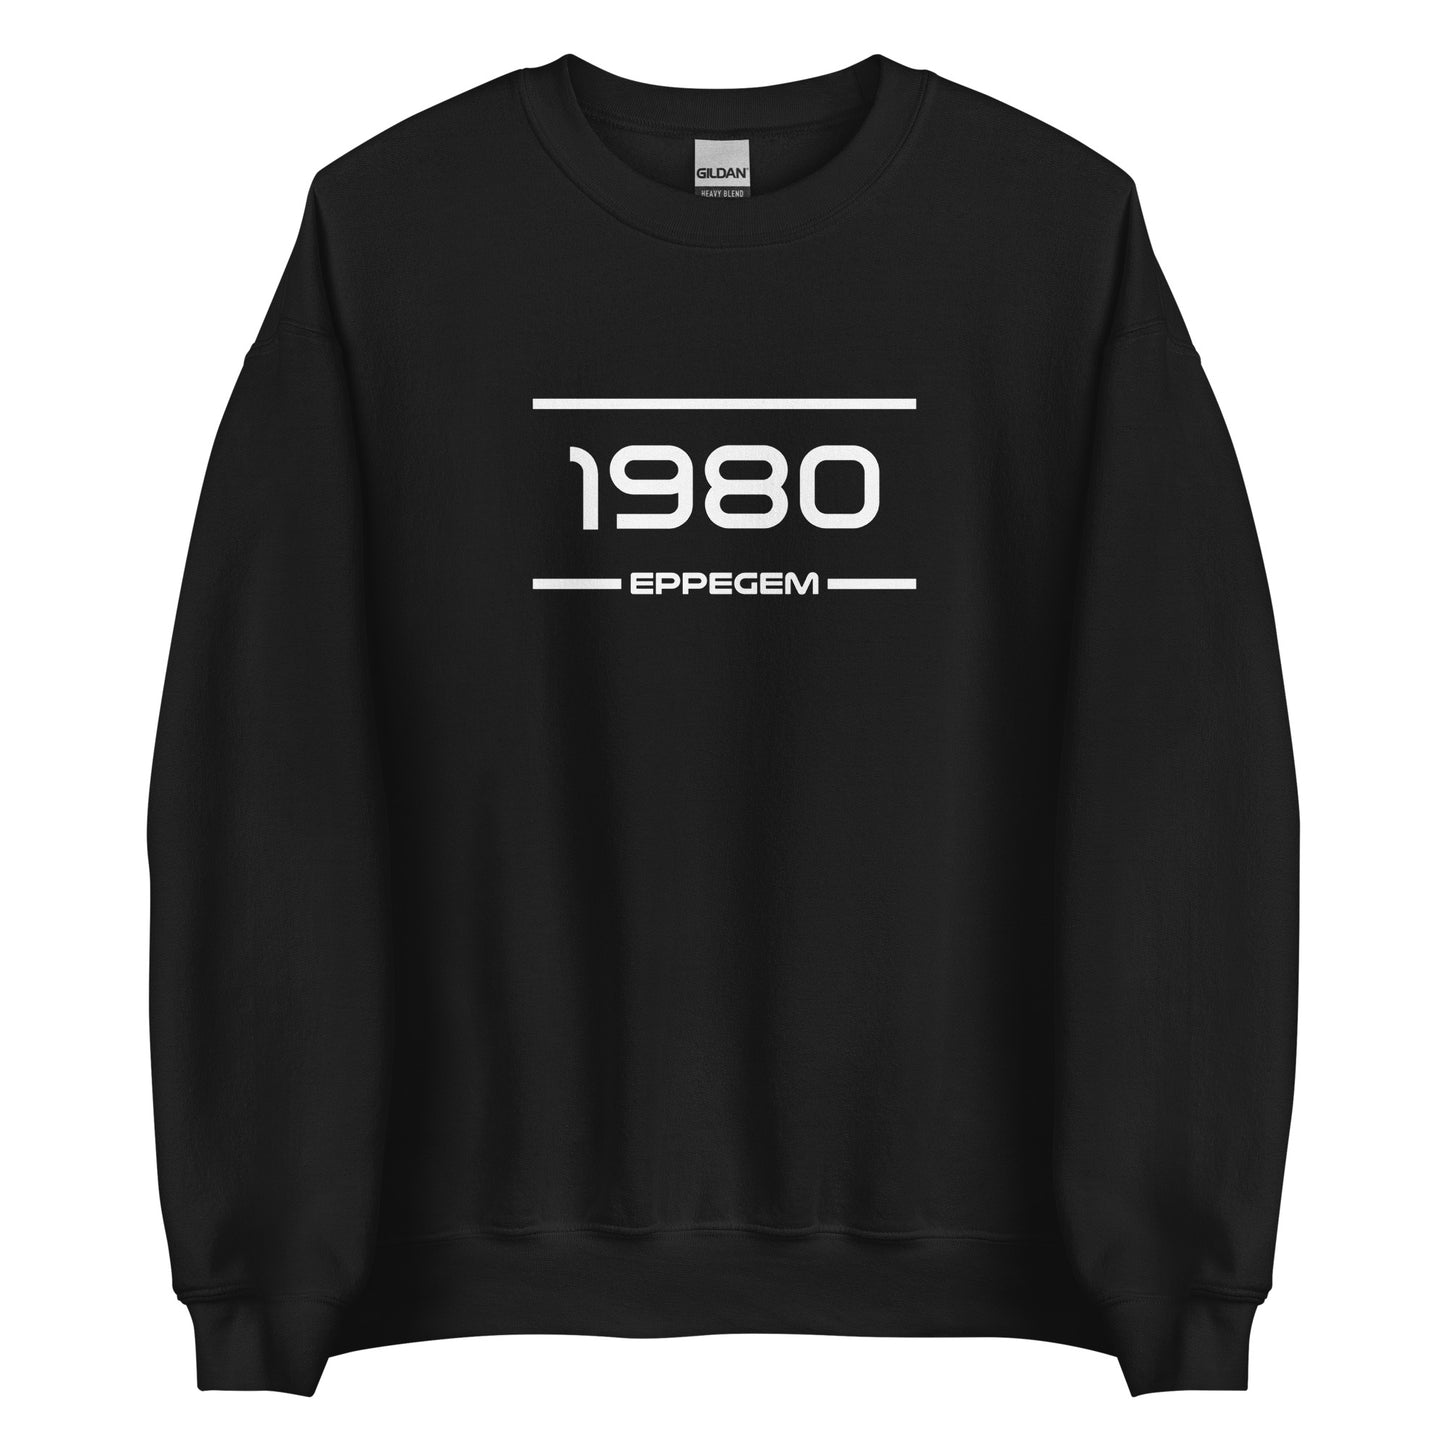 Sweater - 1980 - Eppegem (M/V)